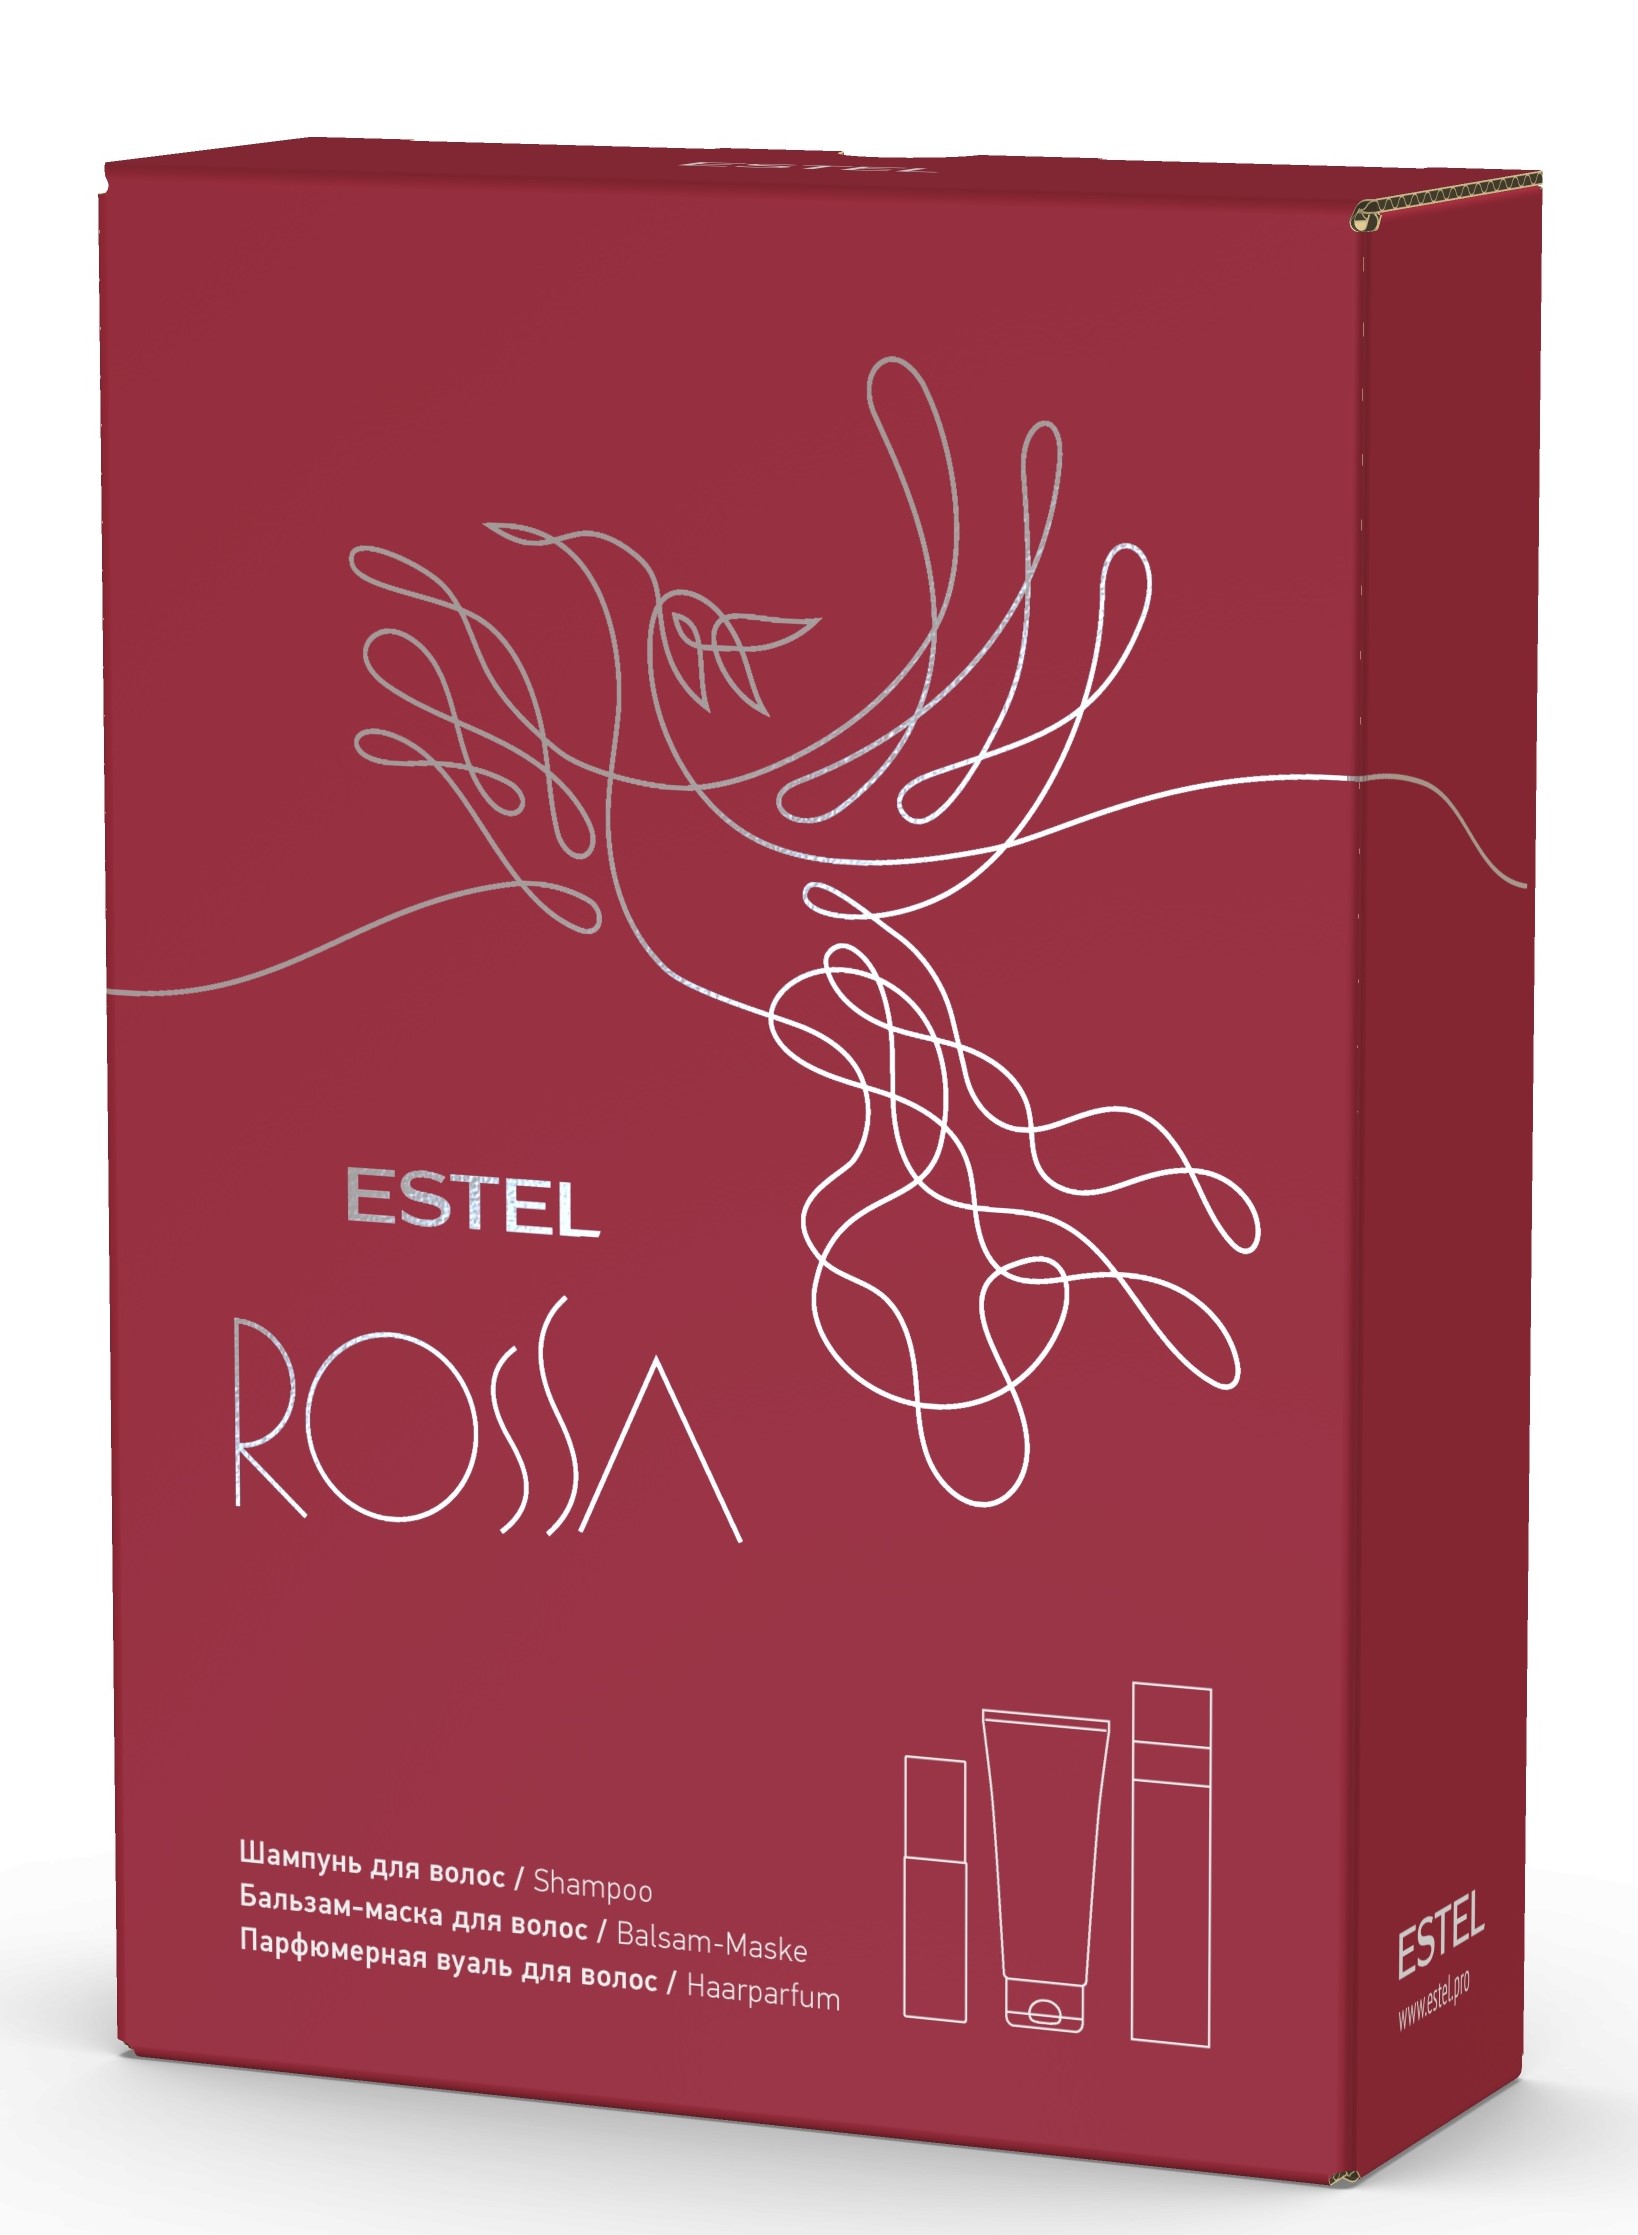 Estel Подарочный набор Rossa: шампунь 250 мл + бальзам-маска 200 мл + парфюмерная вуаль 100 мл (Estel, Rossa)